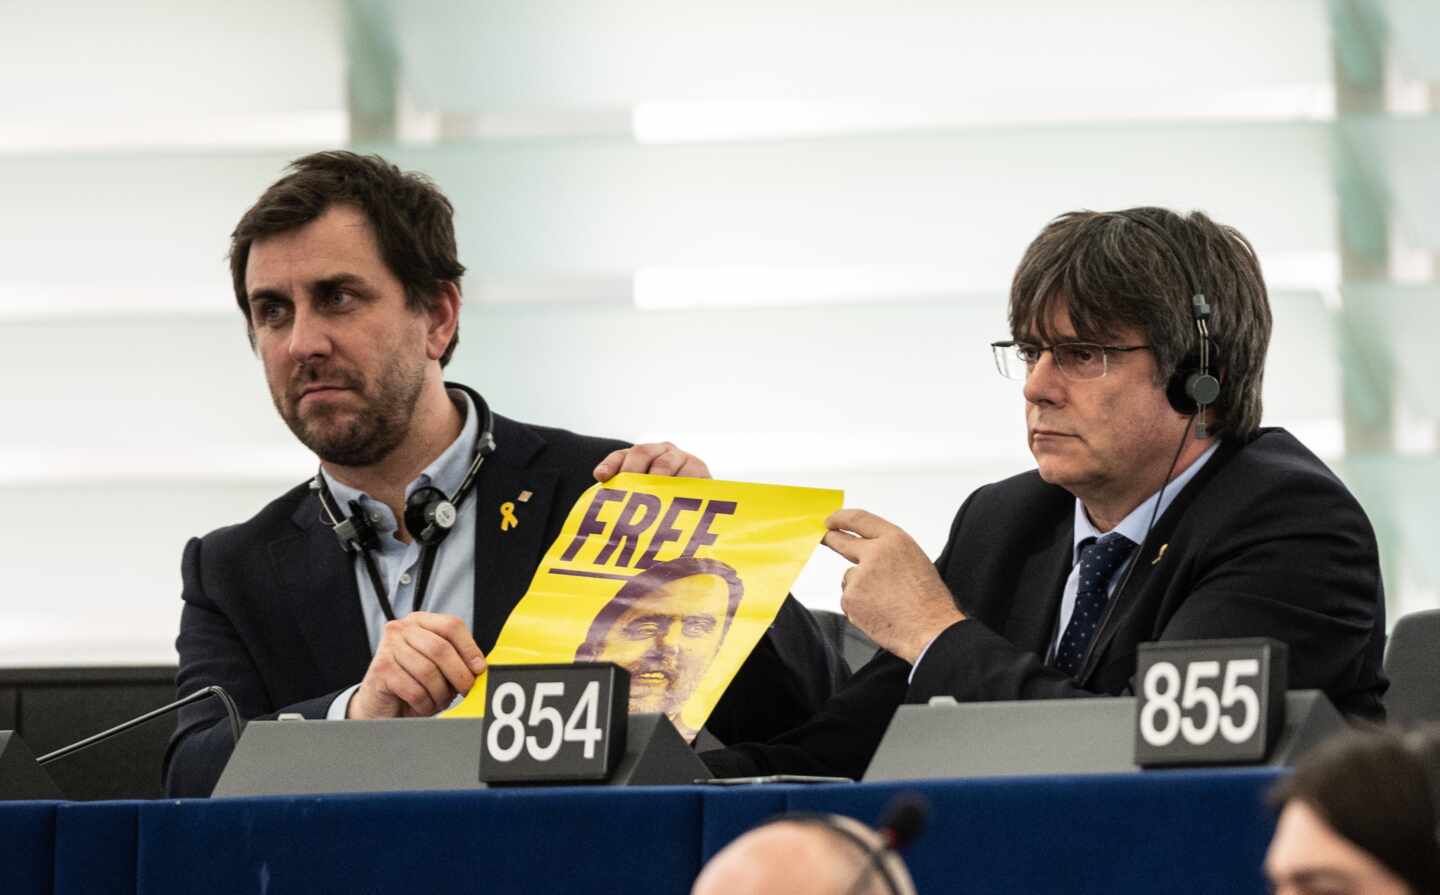 Un ujier del Parlamento Europeo corta el 'show' de Puigdemont y Comín desde su escaño